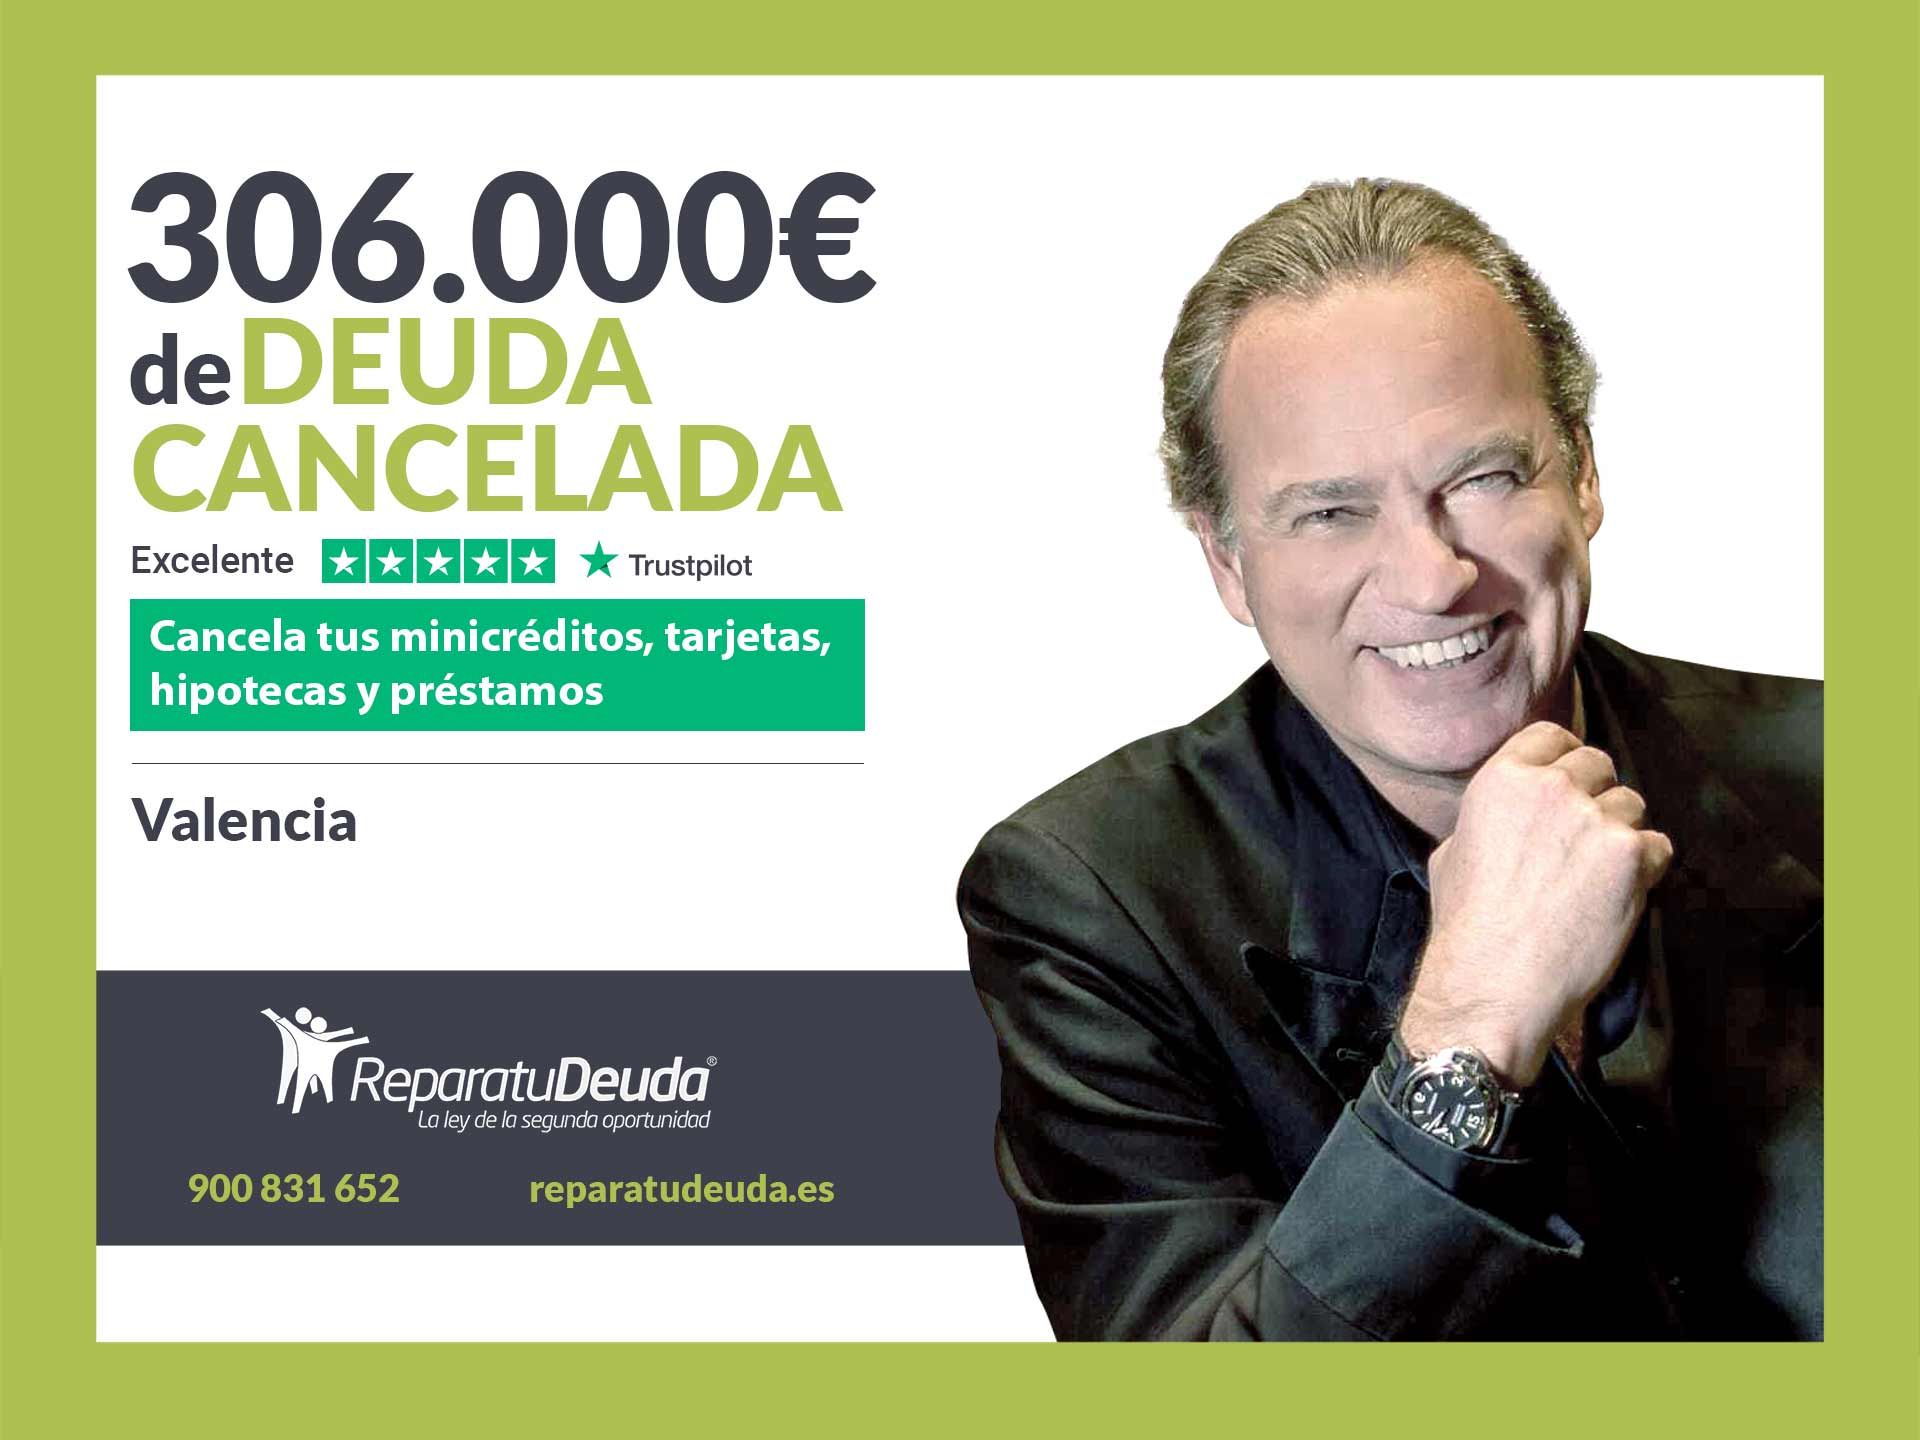 Repara tu Deuda Abogados cancela 306.000? en Valencia con la Ley de Segunda Oportunidad